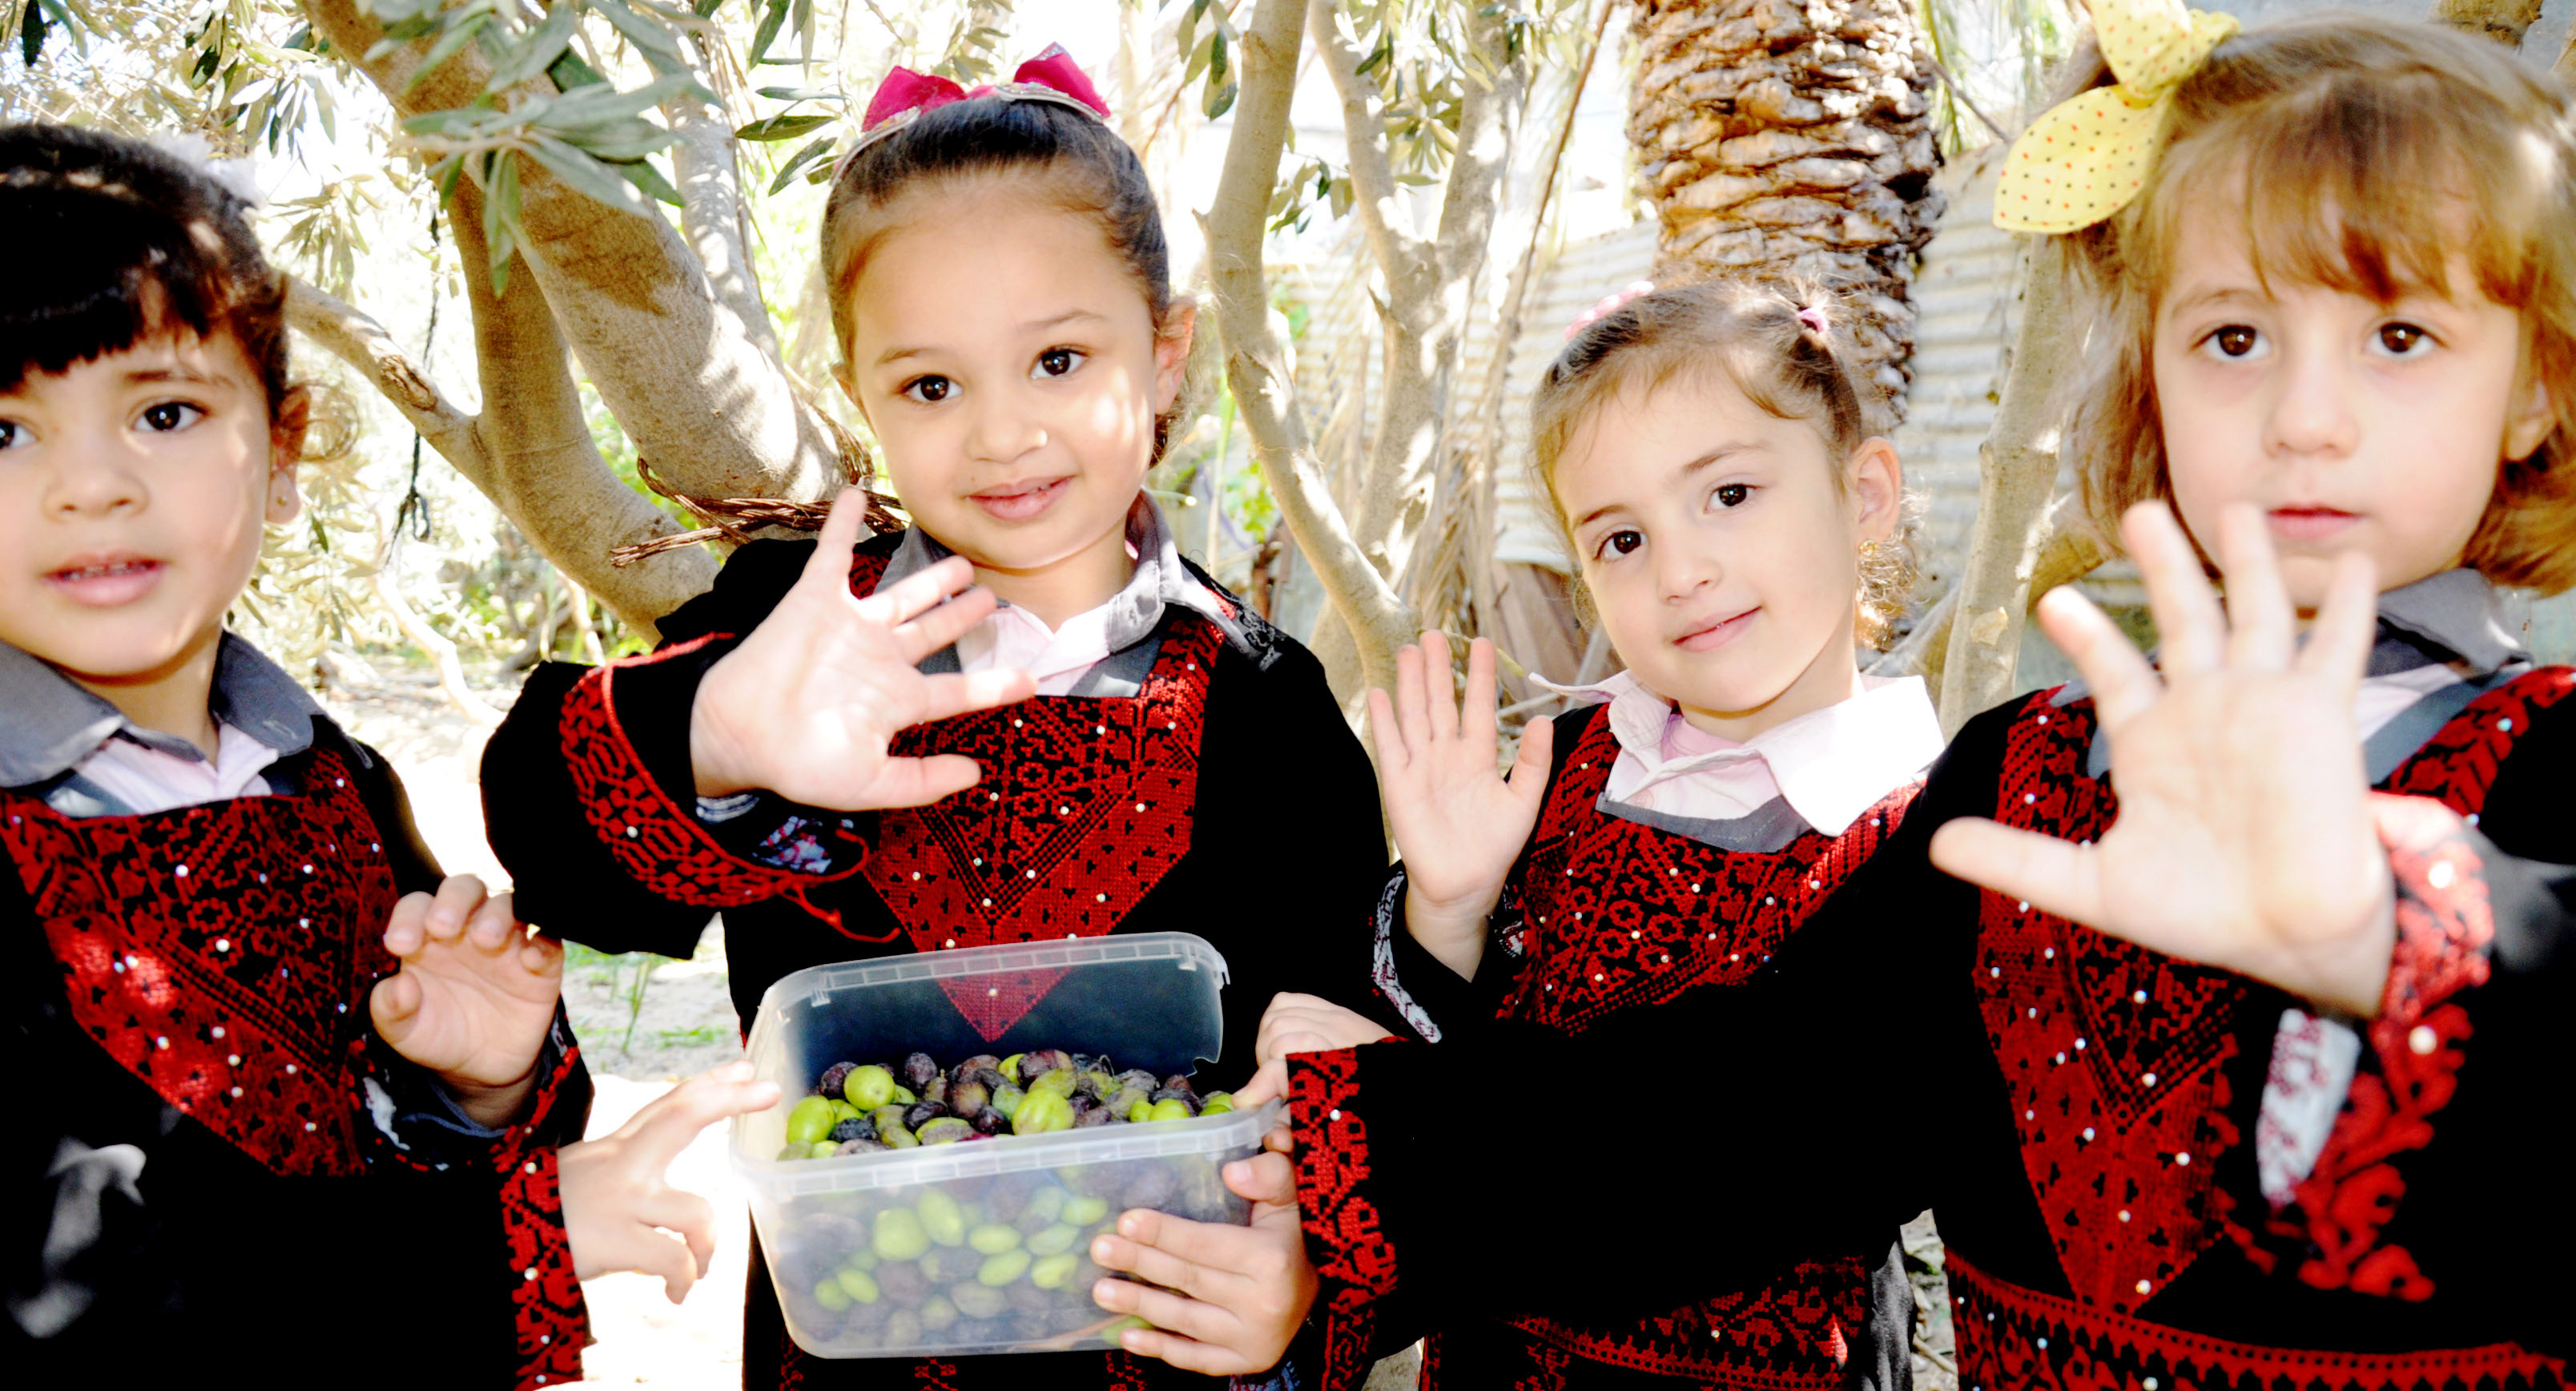 اطفال فلسطينييون يرتدون الثوب الفلسطيني أثناء جنى ثمار الزيتون للتعبير عن تمسكمهم بأرضهم وعاداتهم وتقاليد اجداهم